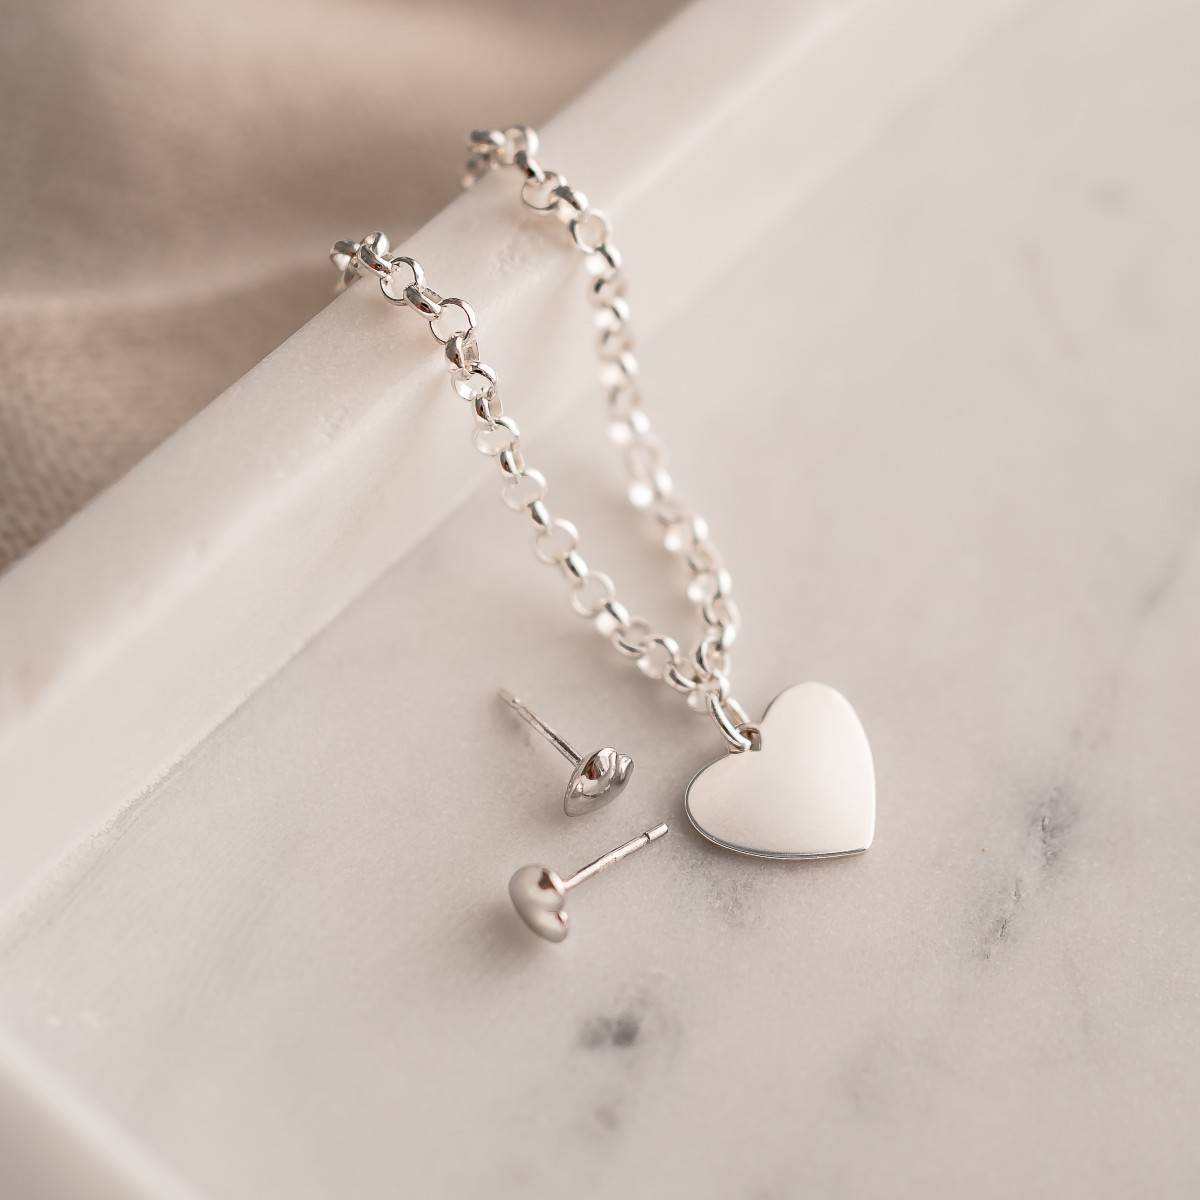 engraved heart bracelet and heart earrings